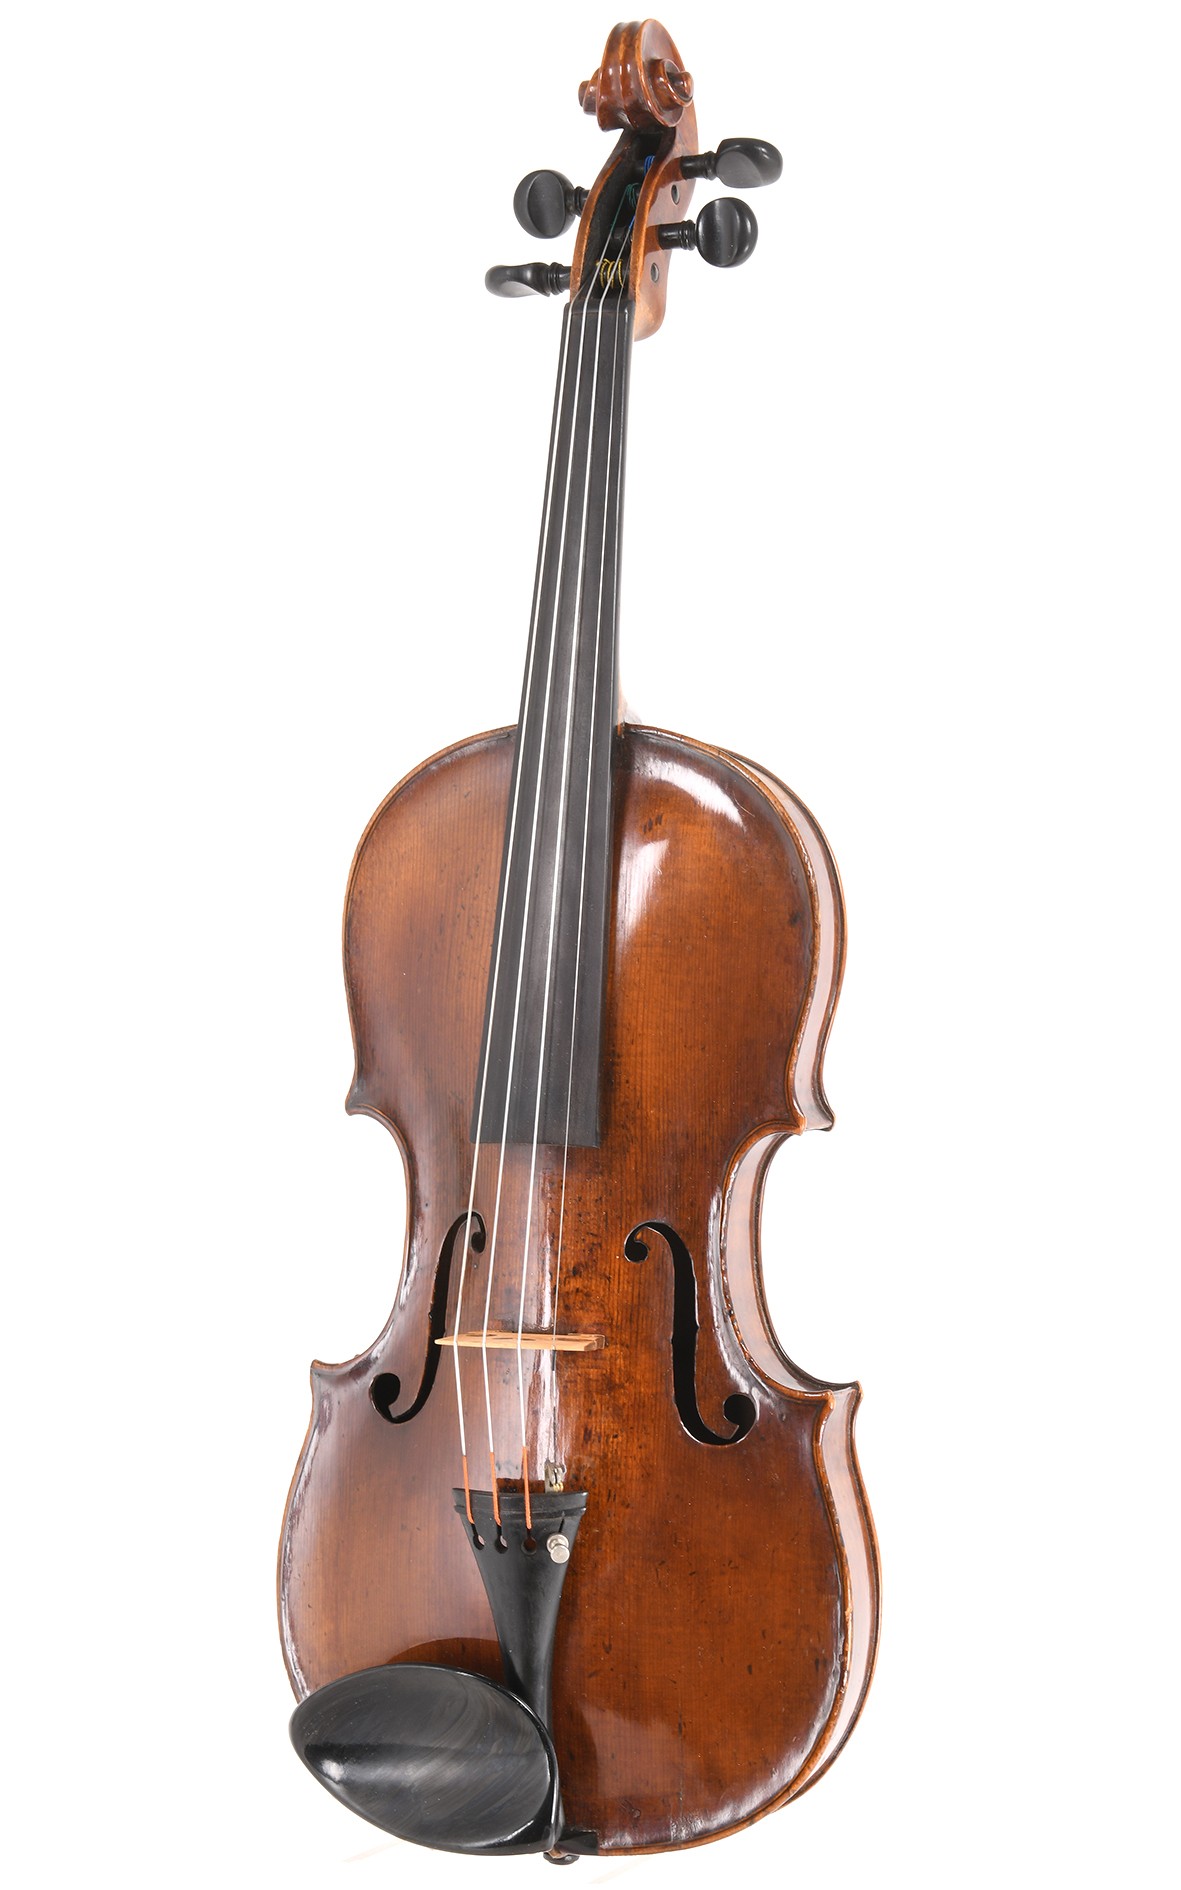 Intéressant violon de maître du Vogtland/Saxe, vers 1800